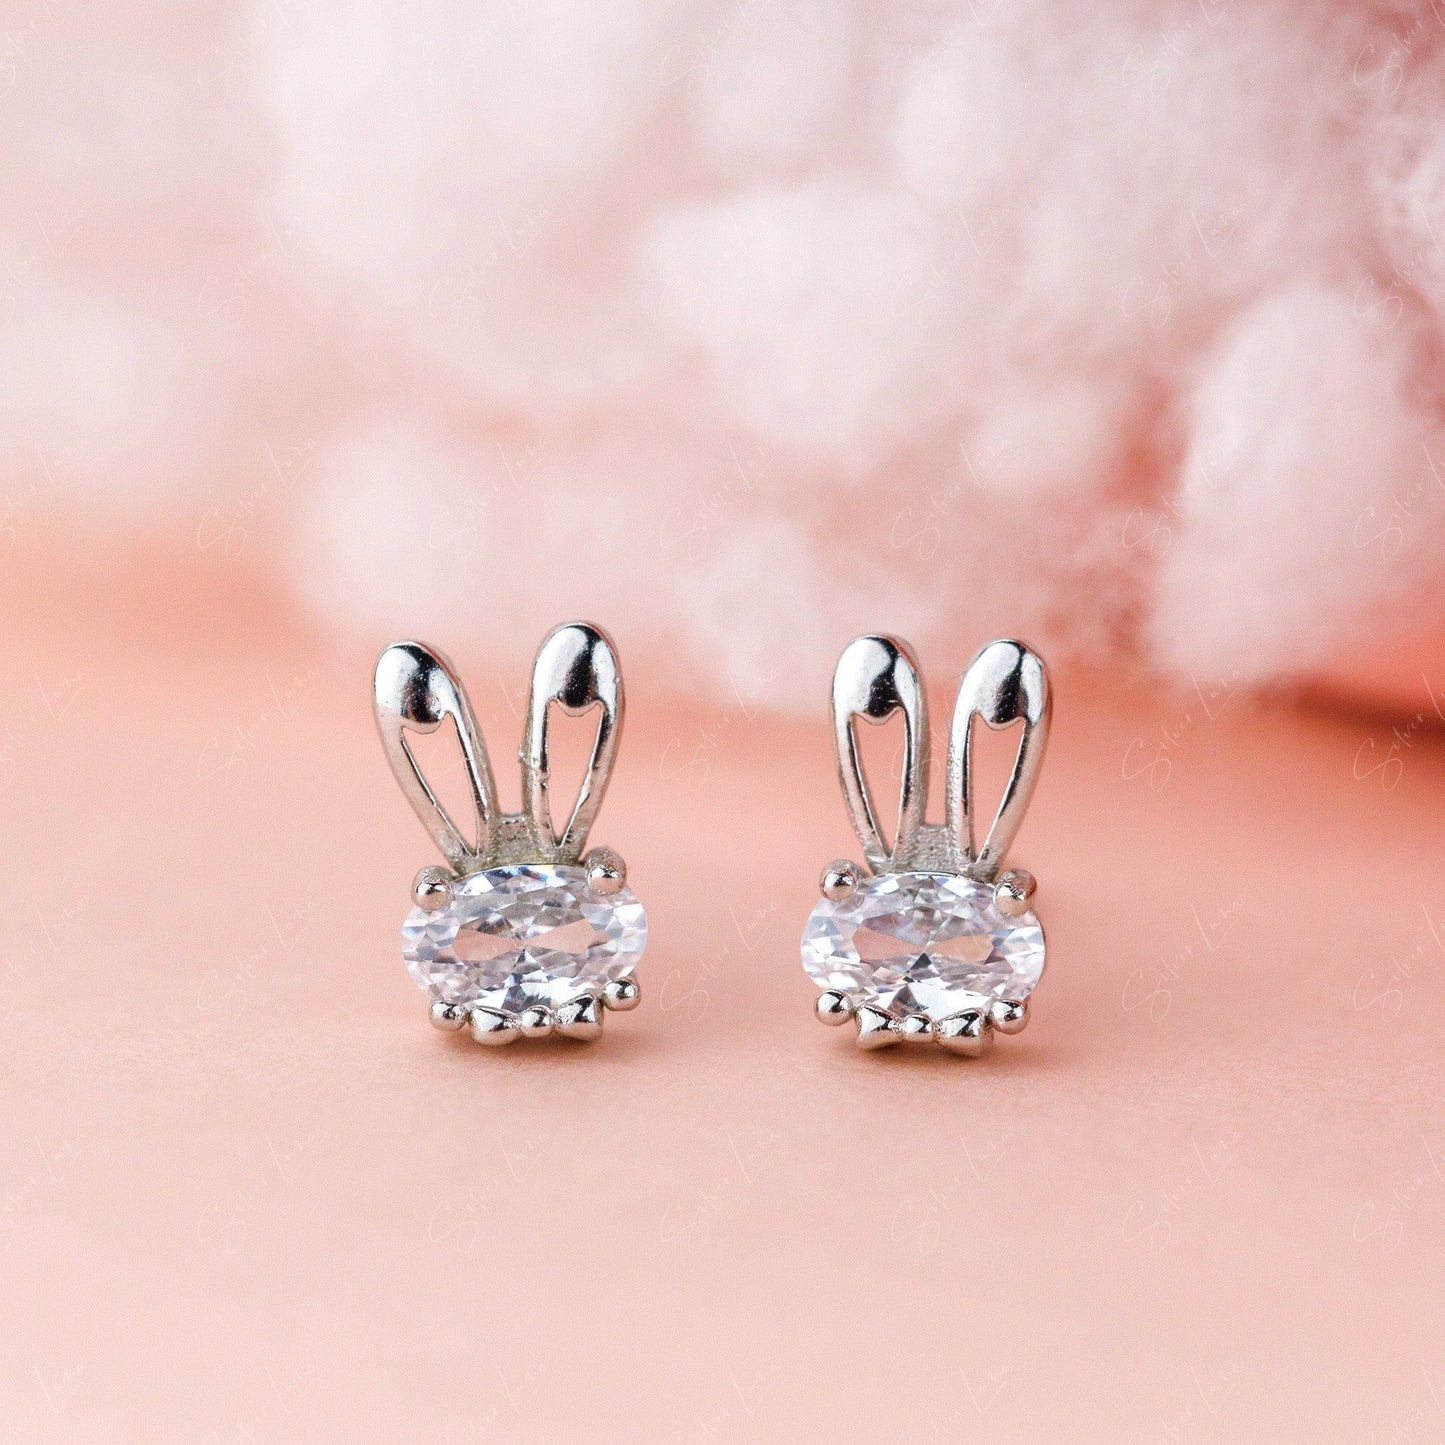 bunny ear stud earrings